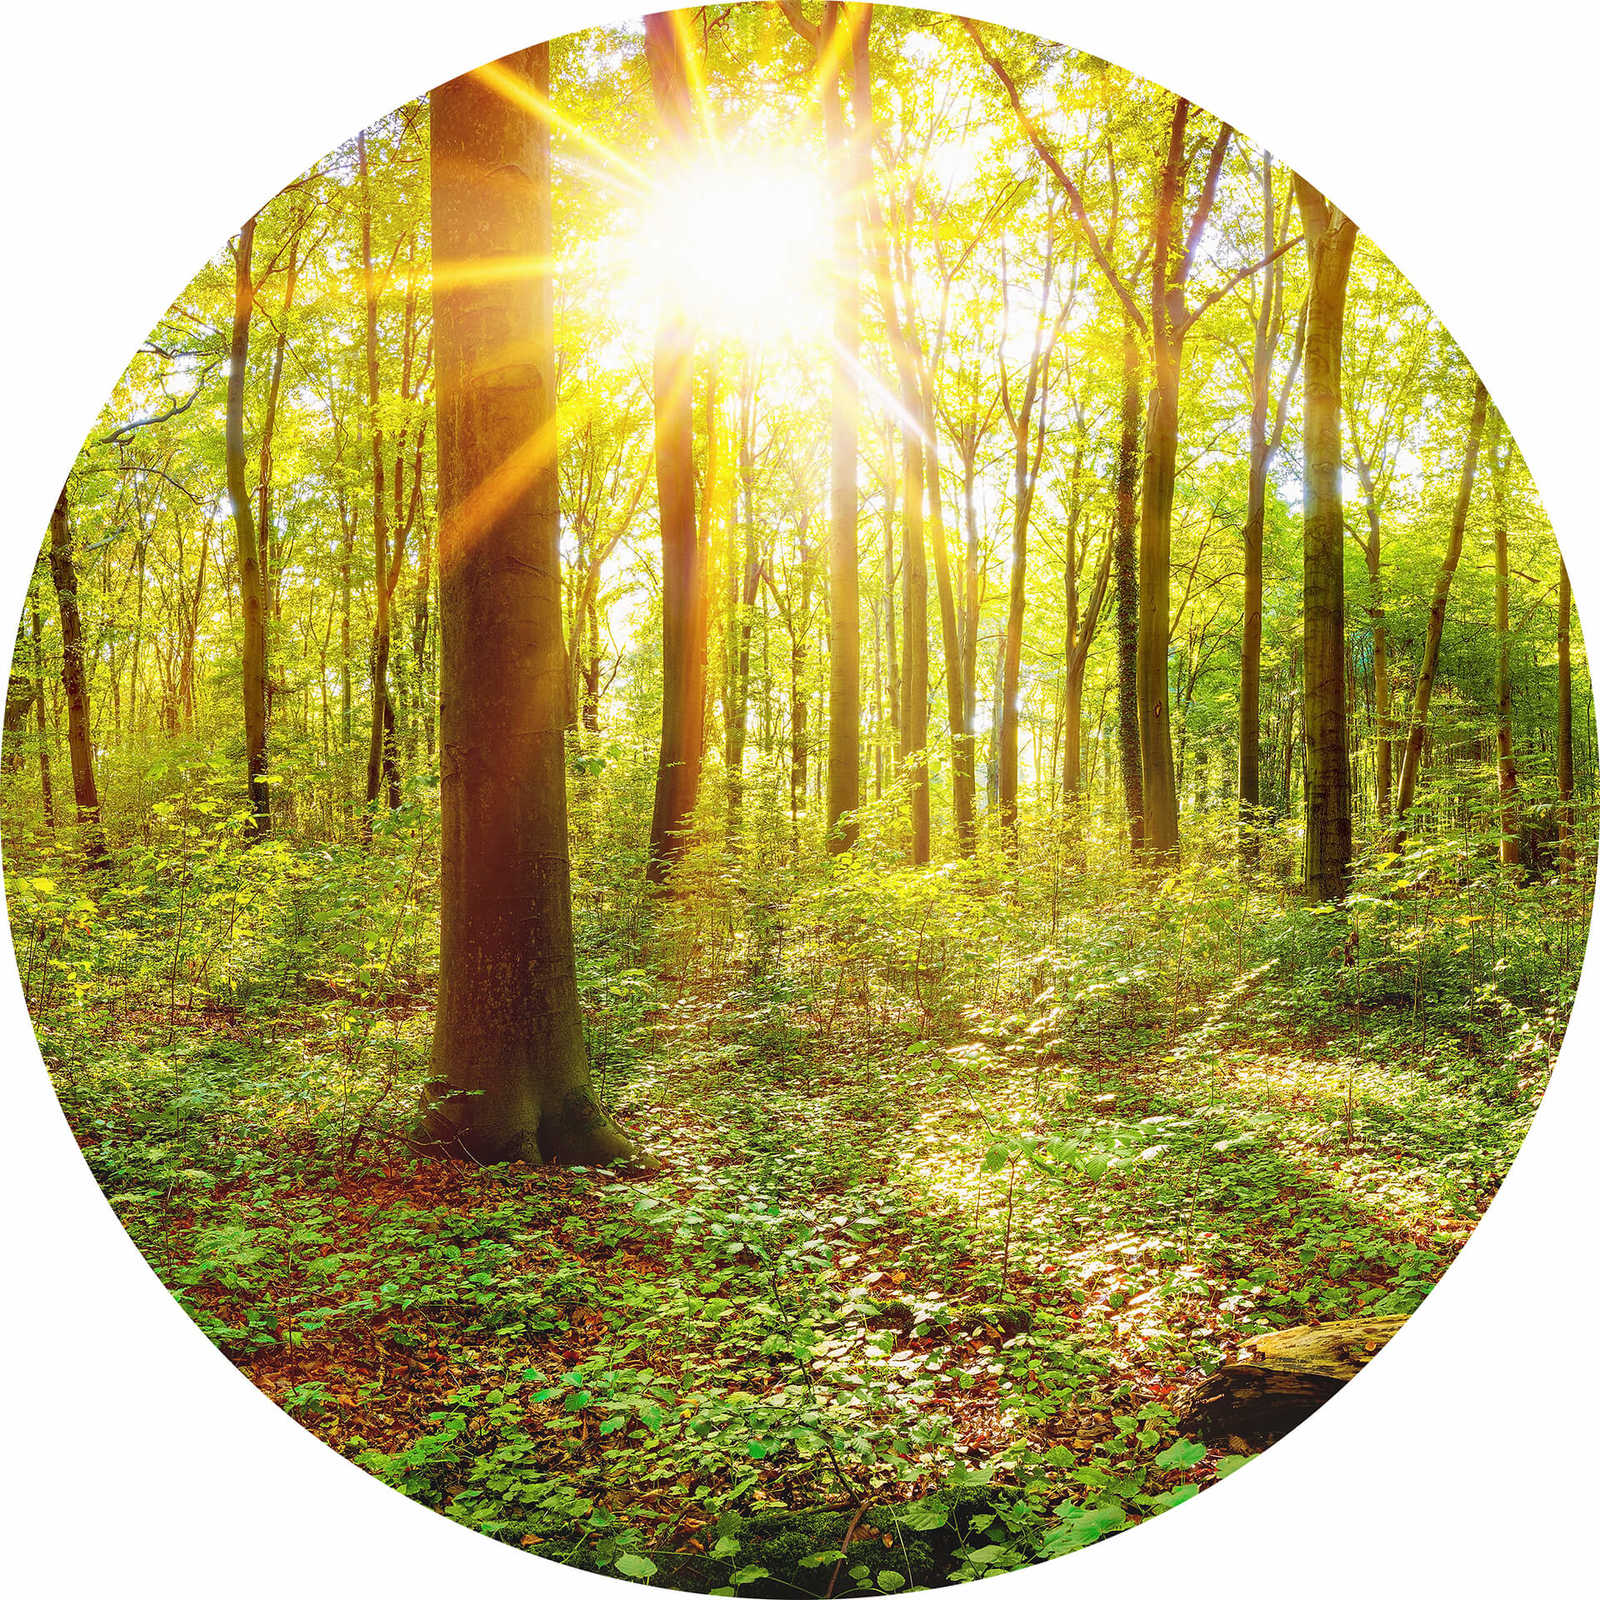         Fototapete rund sonniger Wald – Grün, Braun
    